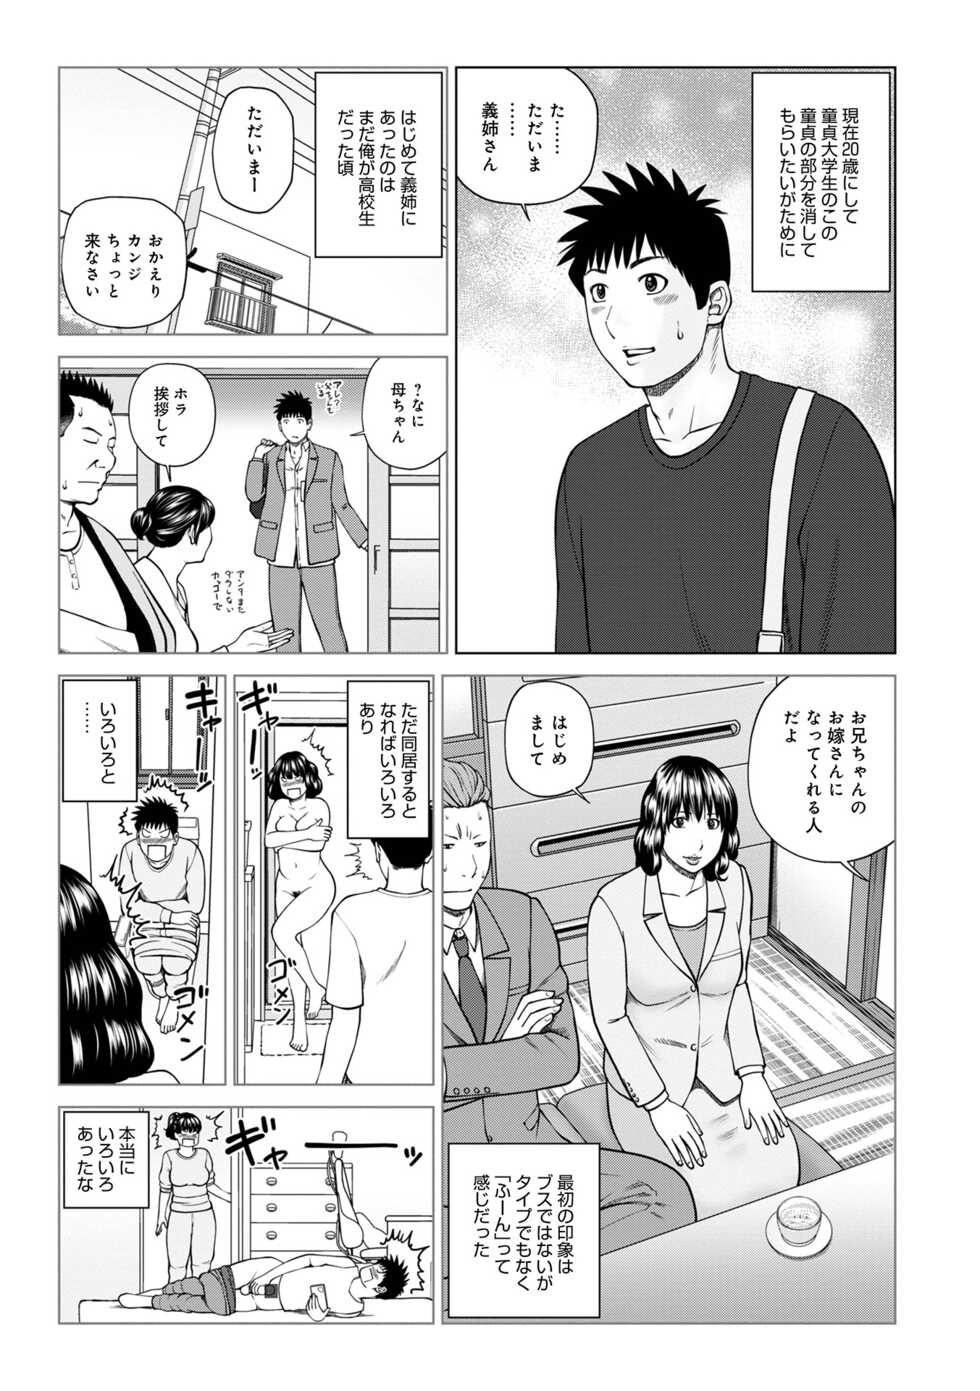 [Anthology] WEB Ban COMIC Gekiyaba! Vol. 153 - Page 5